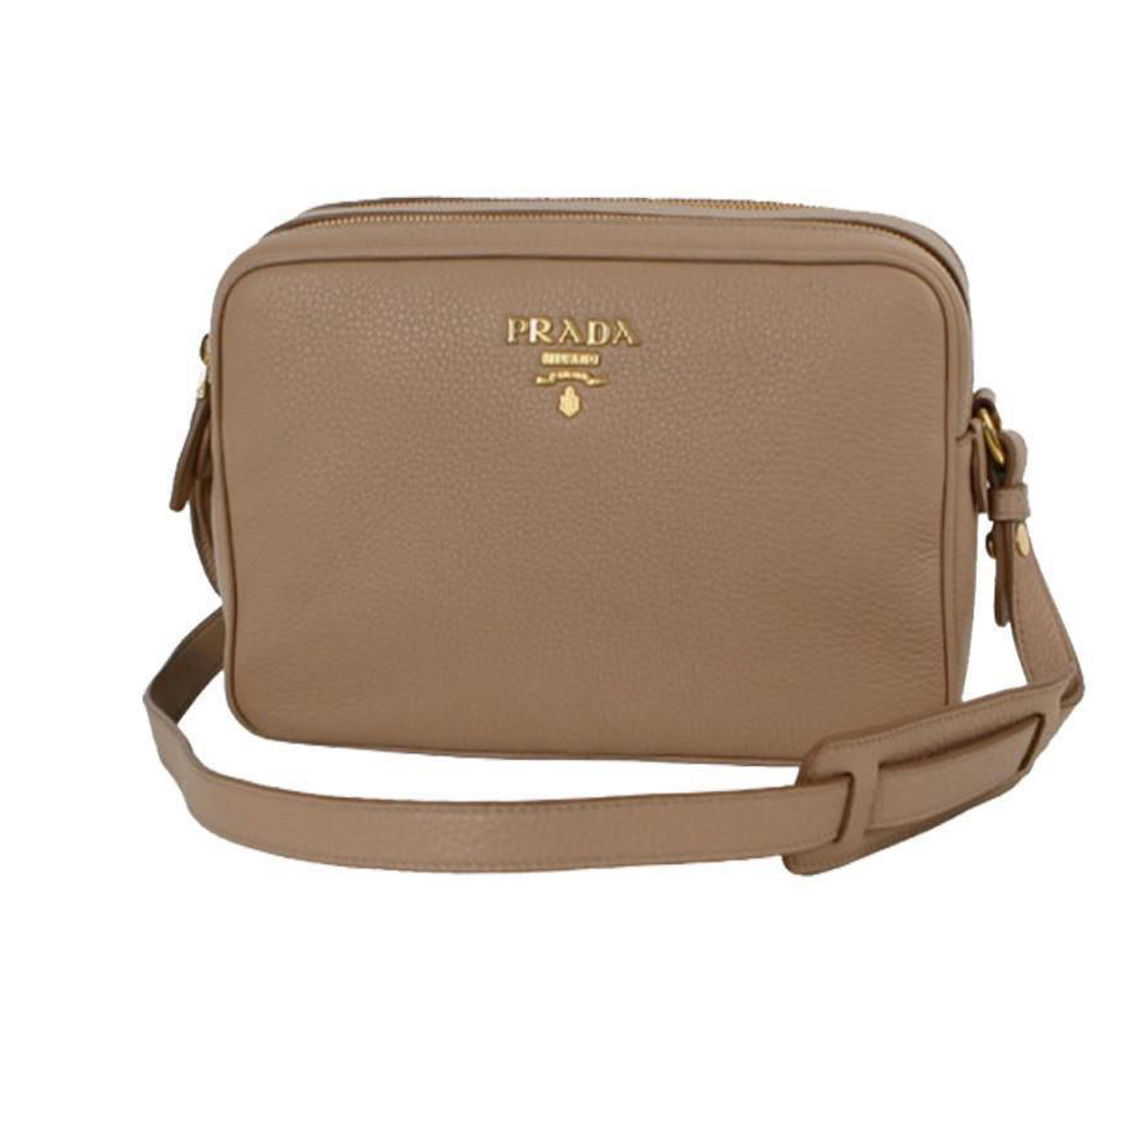 Prada Beige Vitello Phenix Leather Double Zip Crossbody Bag, Handbags, Clothing & Accessories